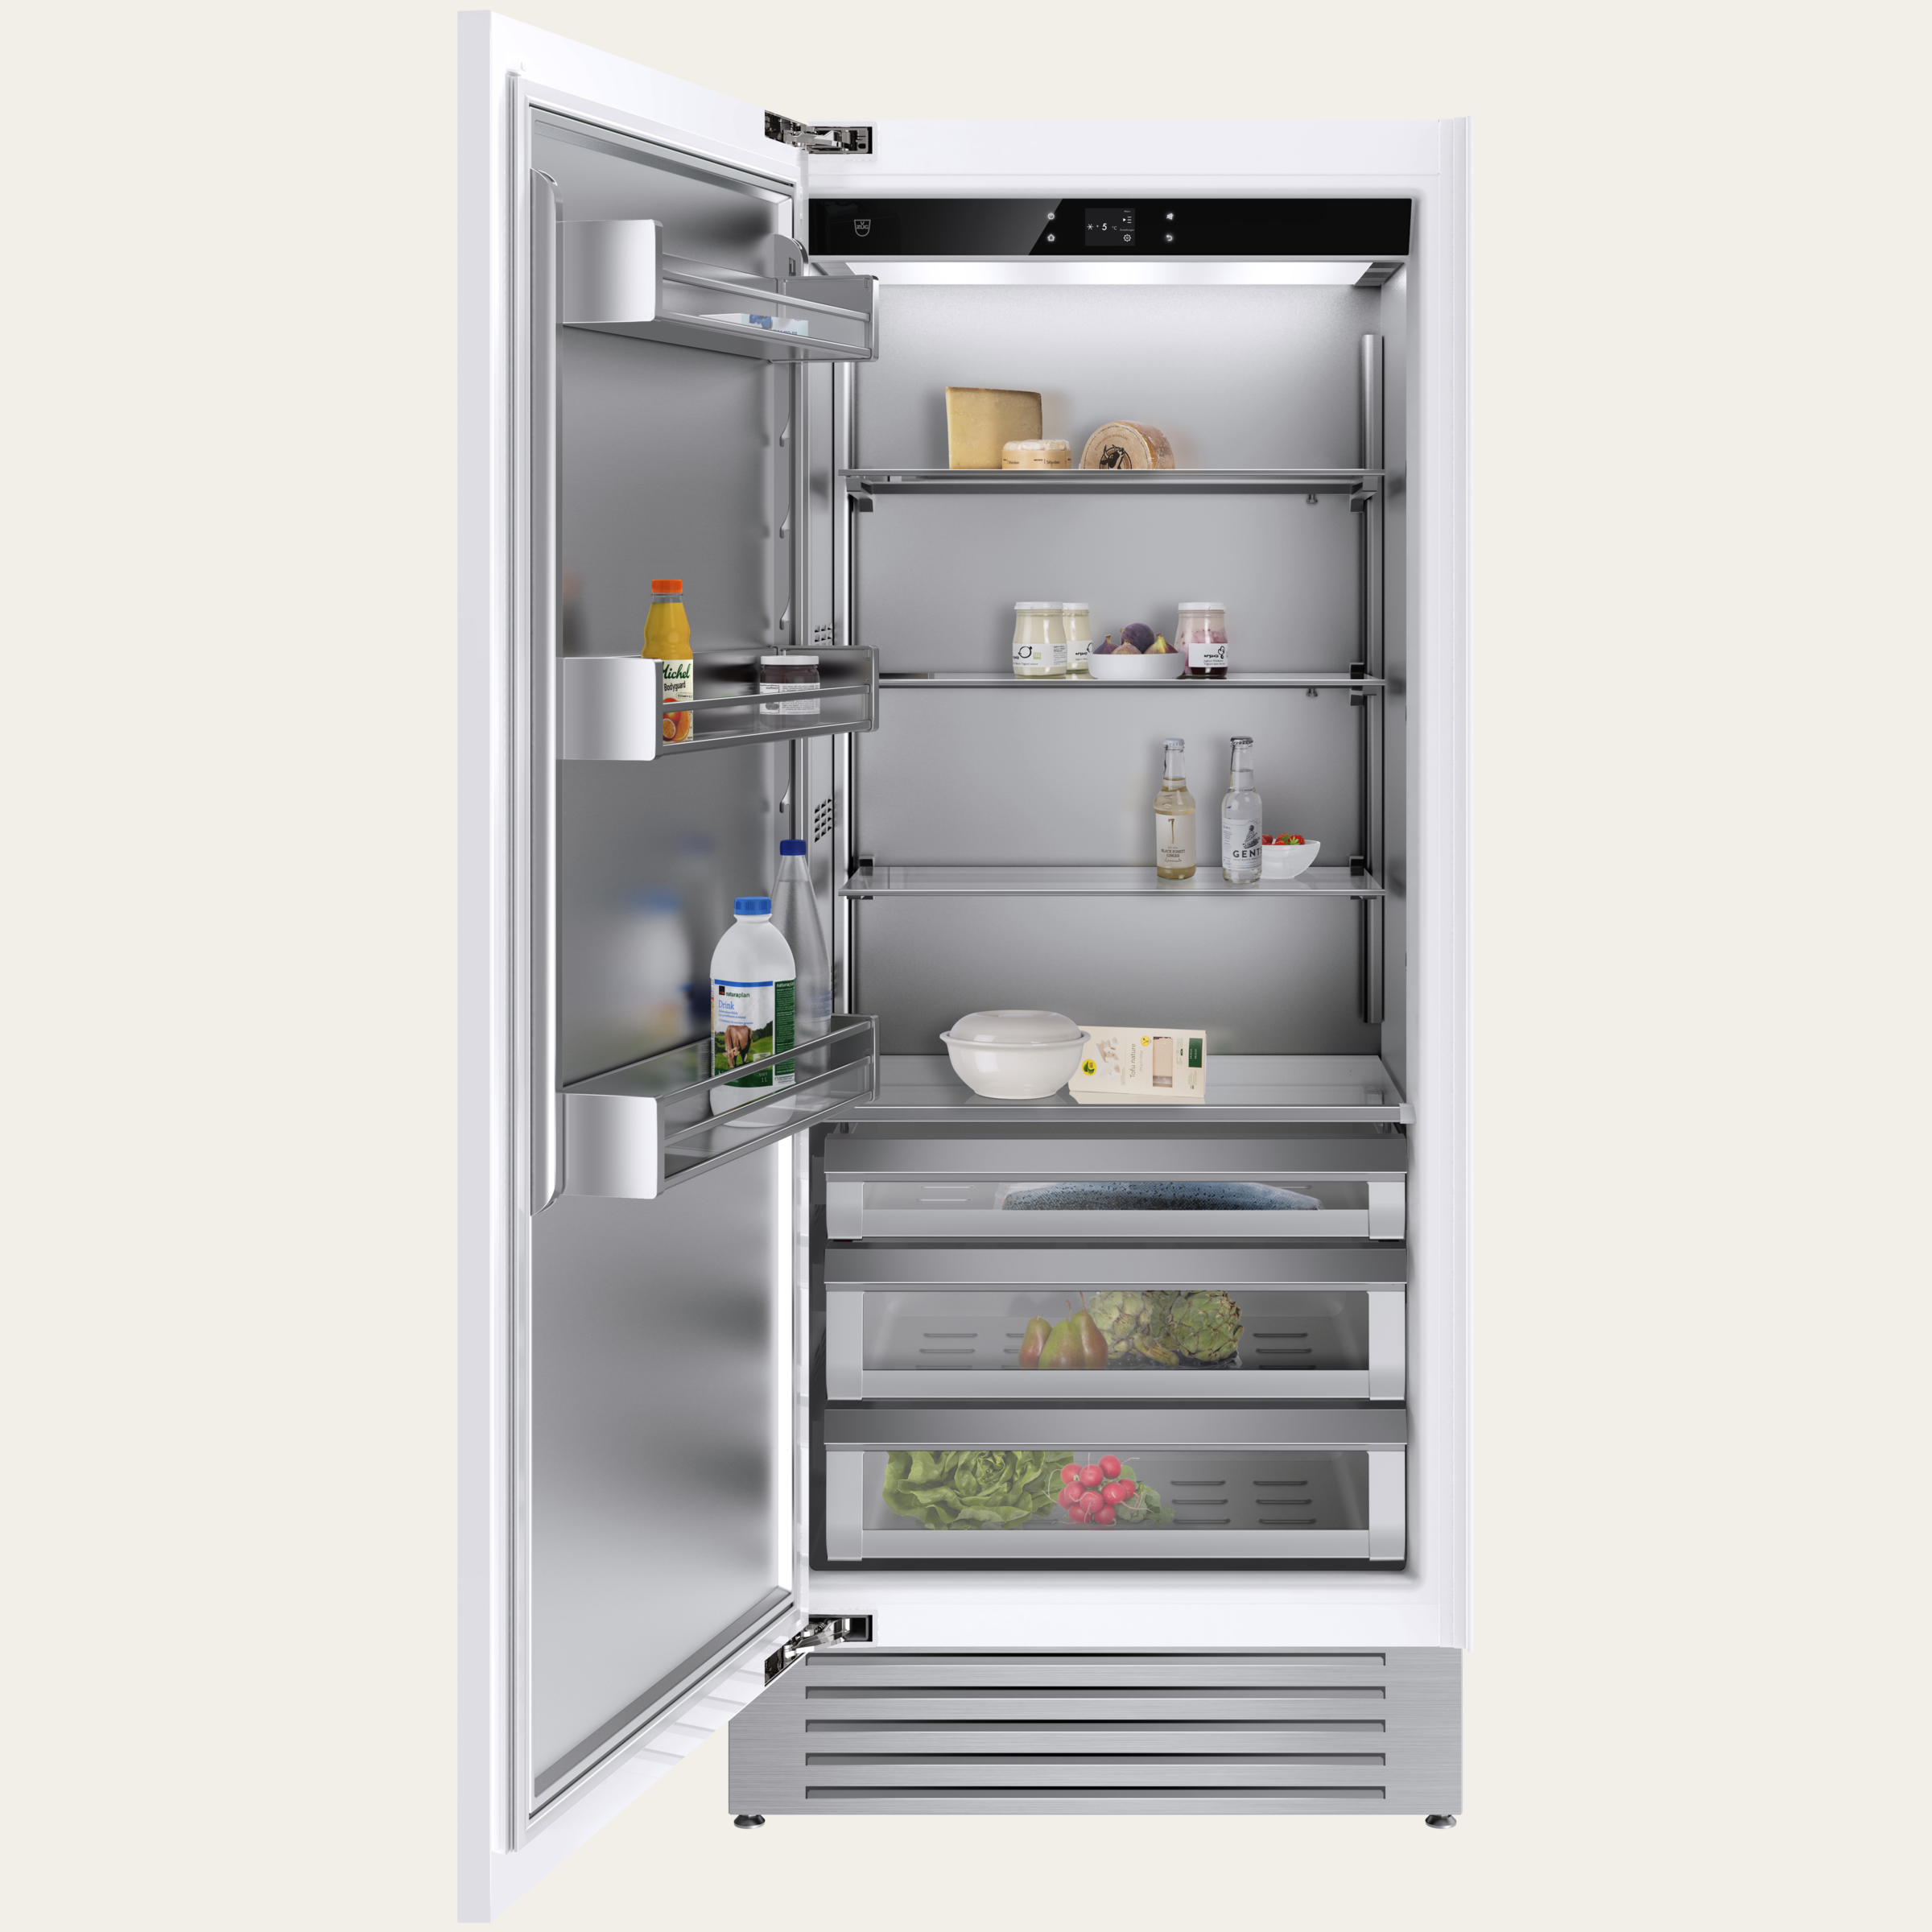 V-ZUG Refrigerator/freezer Cooler V6000 Supreme, Standard width: 90 cm, Standard height: 205 cm, Fully integratable, Door hinge: Left, Energyefficiency rating: F, TouchControl